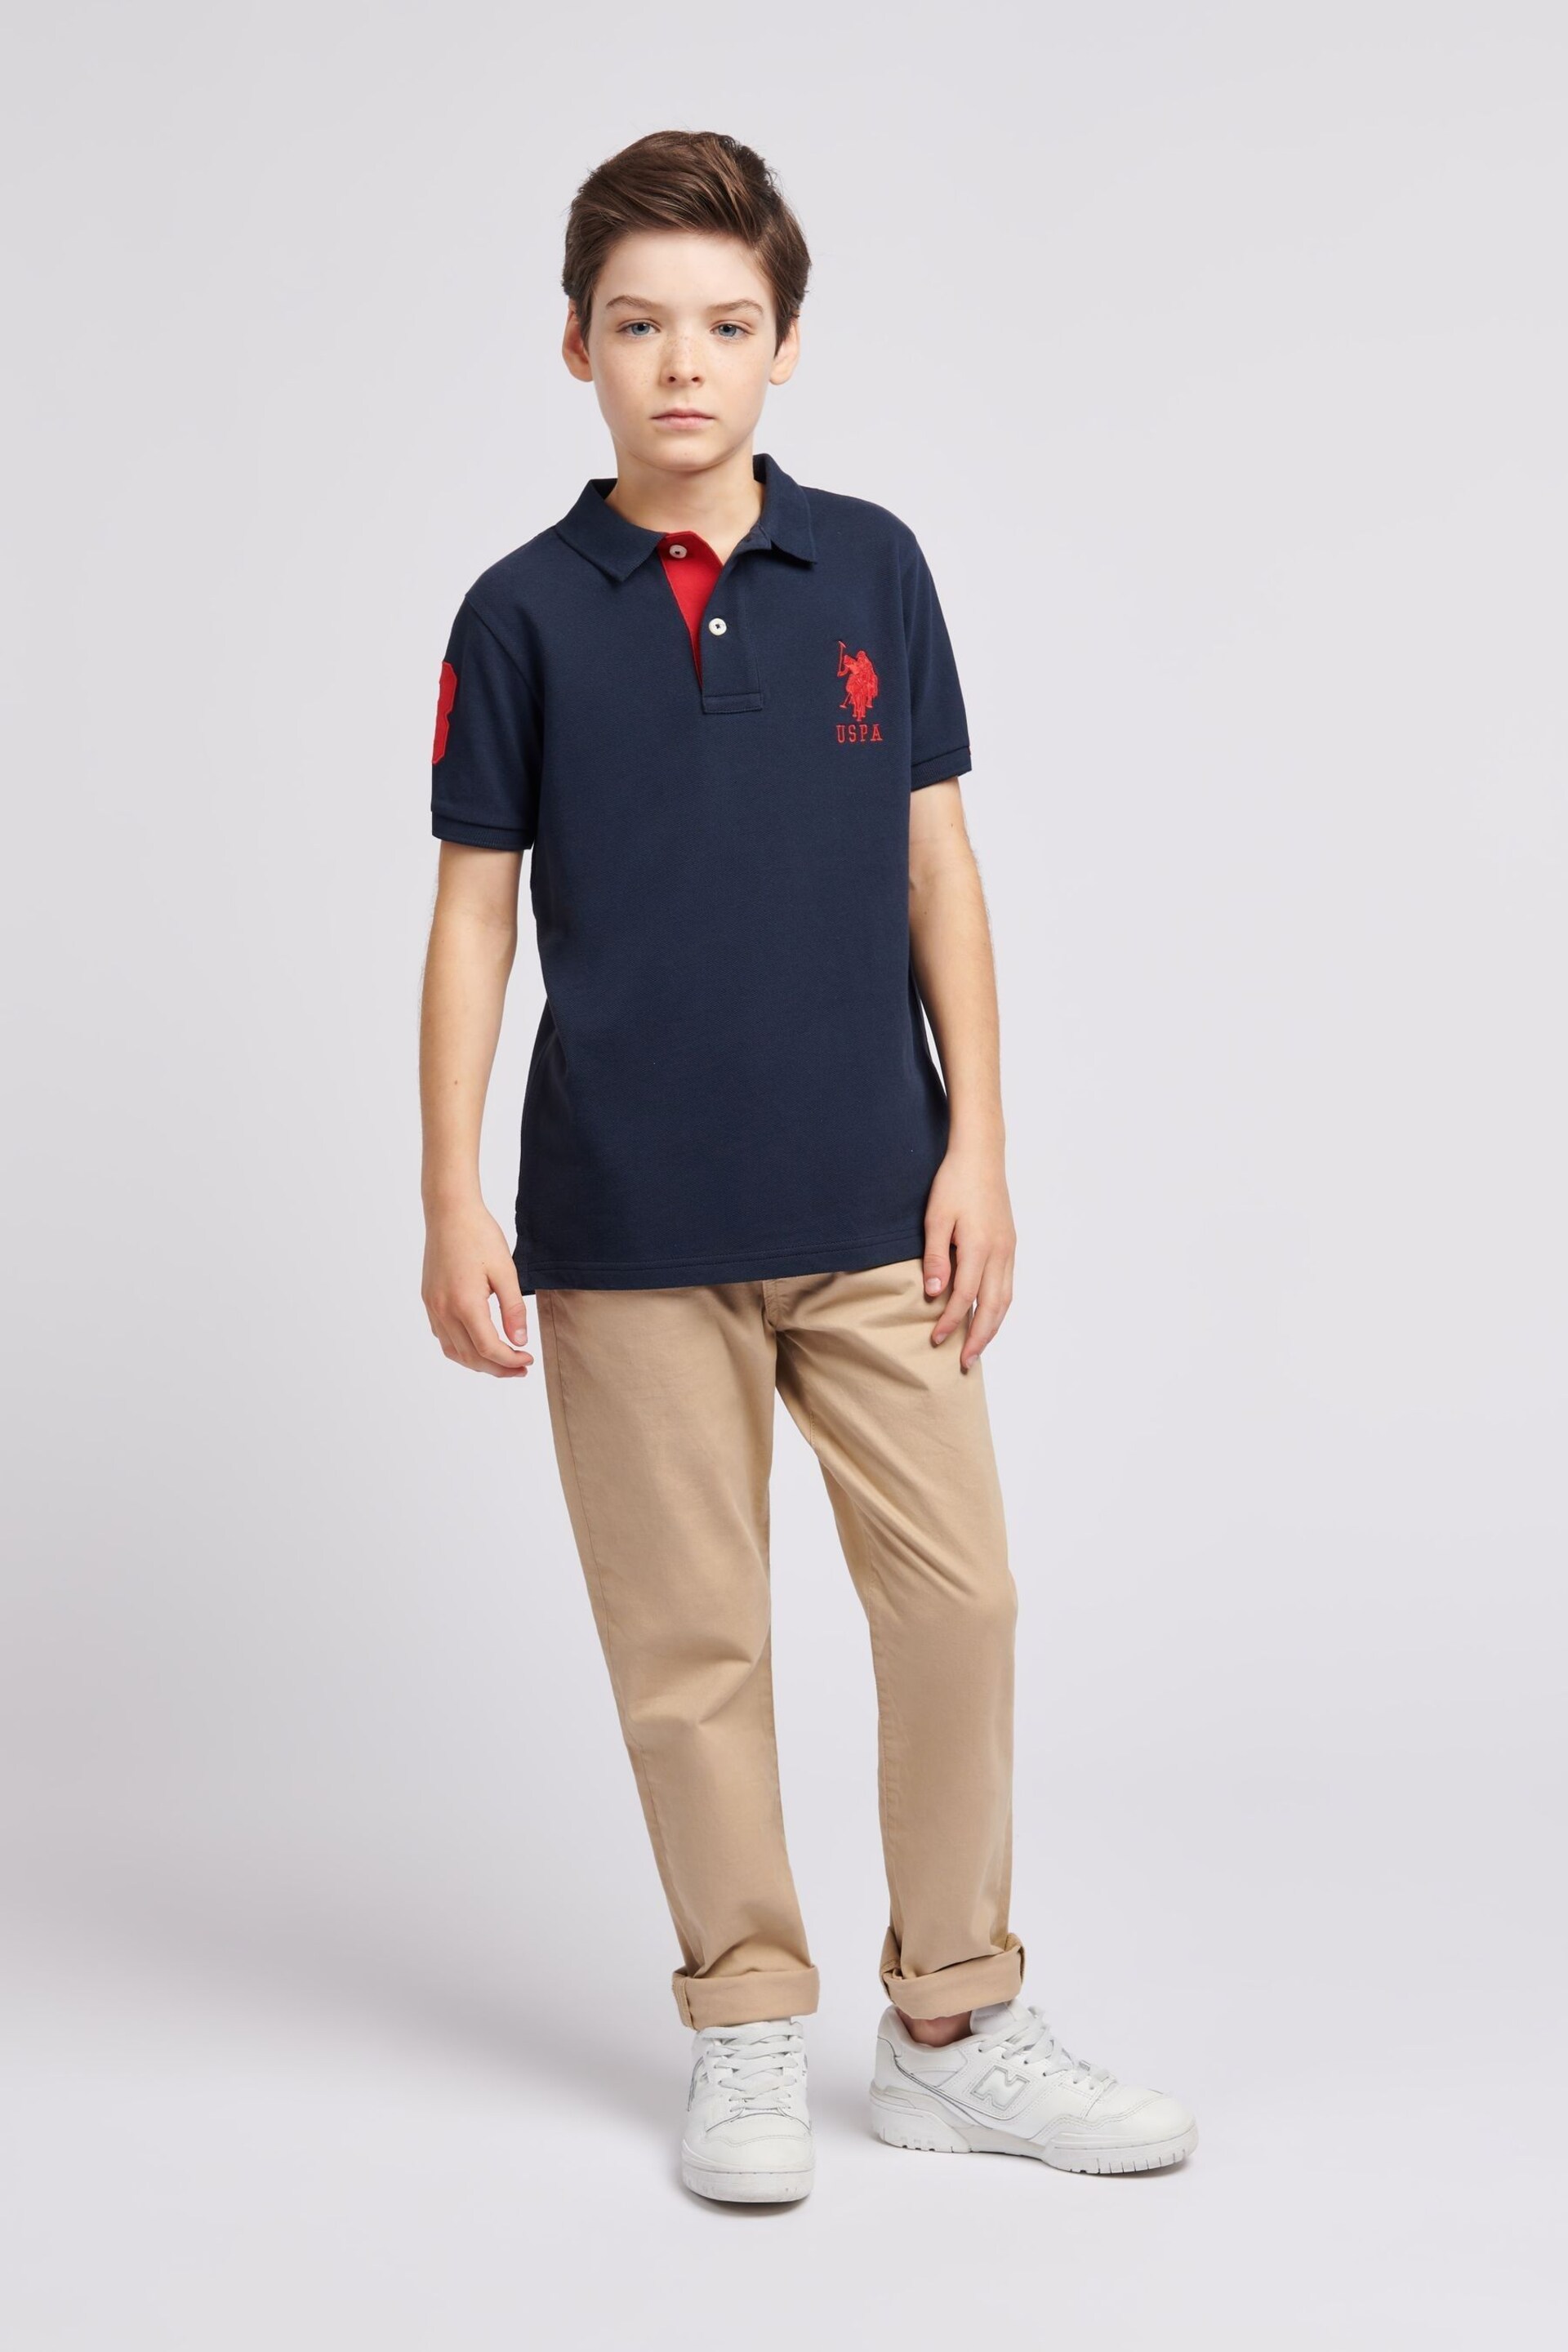 U.S. Polo Assn. Boys Blue Player 3 Pique Polo Shirt - Image 3 of 7